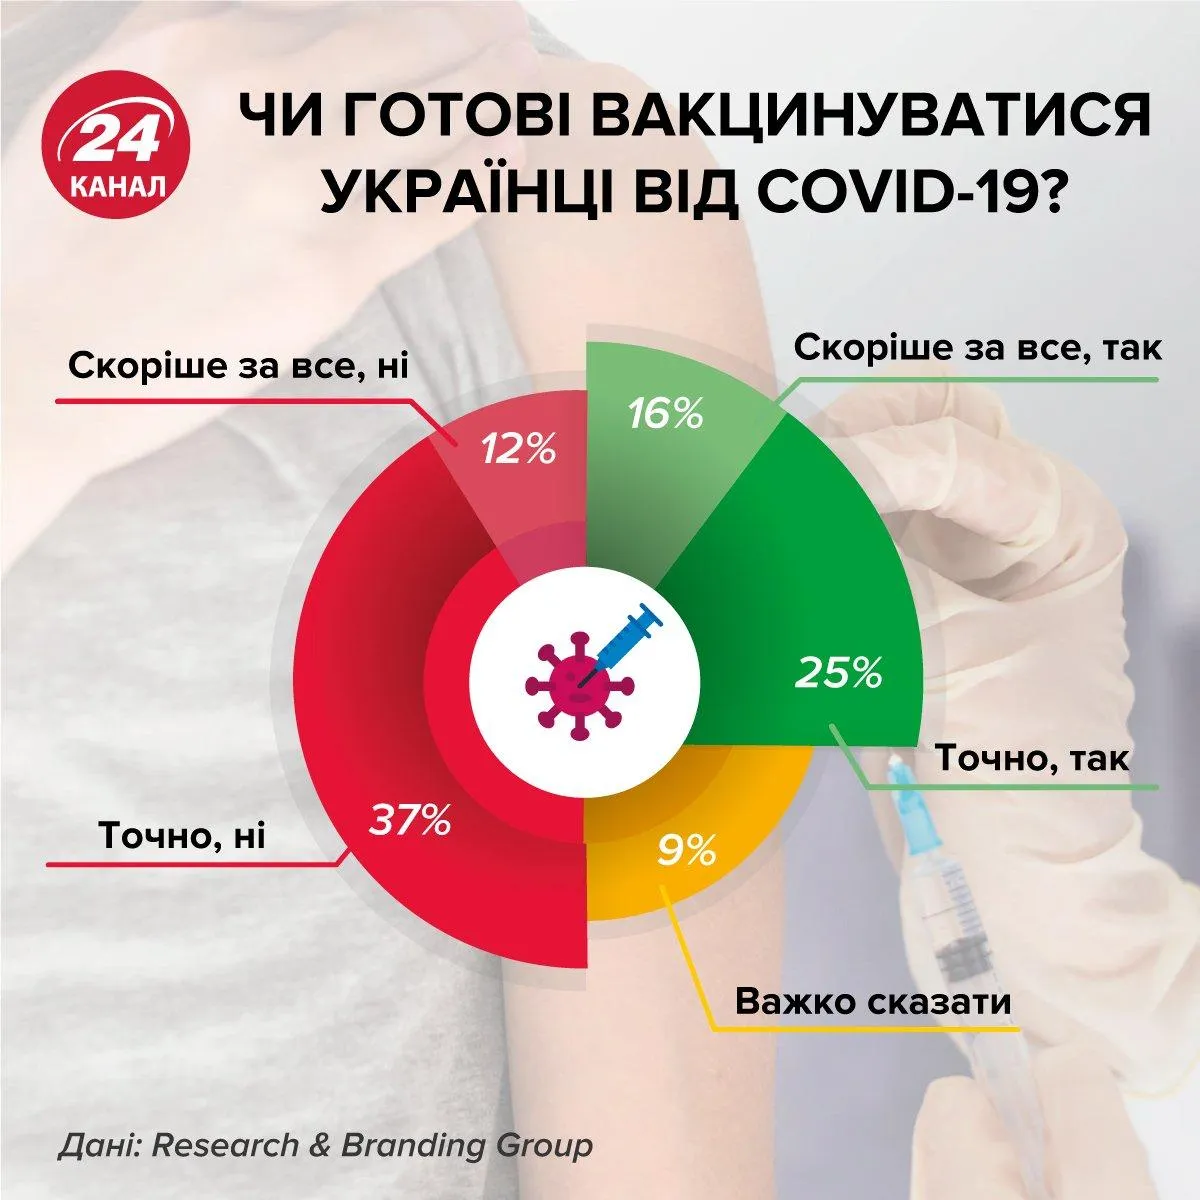 Вакцина, коронавирус, COVID-19, как украинцы относятся к вакцинации против коронавируса, готовы ли украинцы вакцинироваться от COVID-19